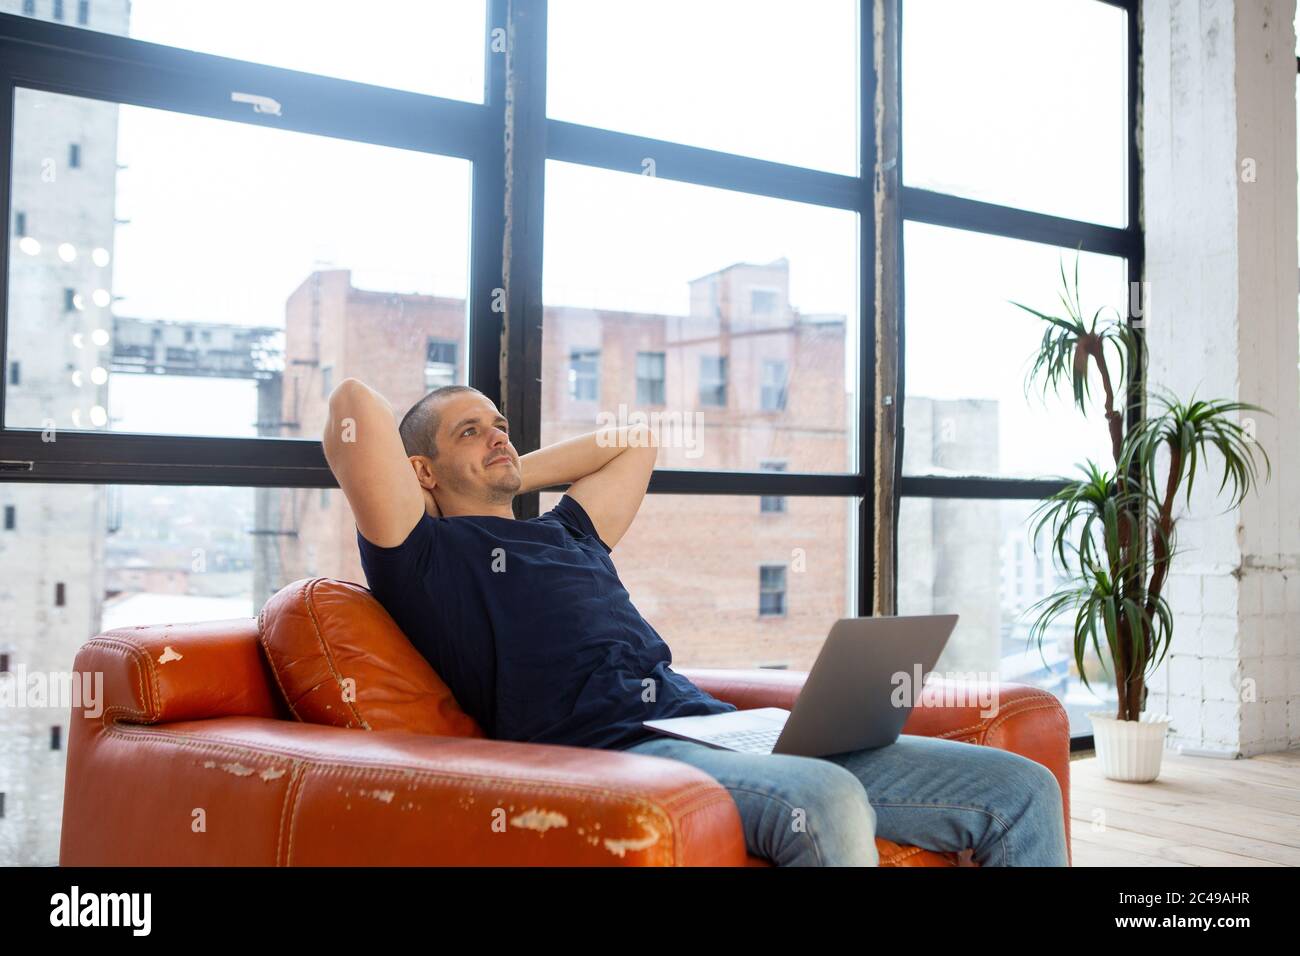 Homme adulte se relaxant à la maison avec un ordinateur portable à genoux Banque D'Images